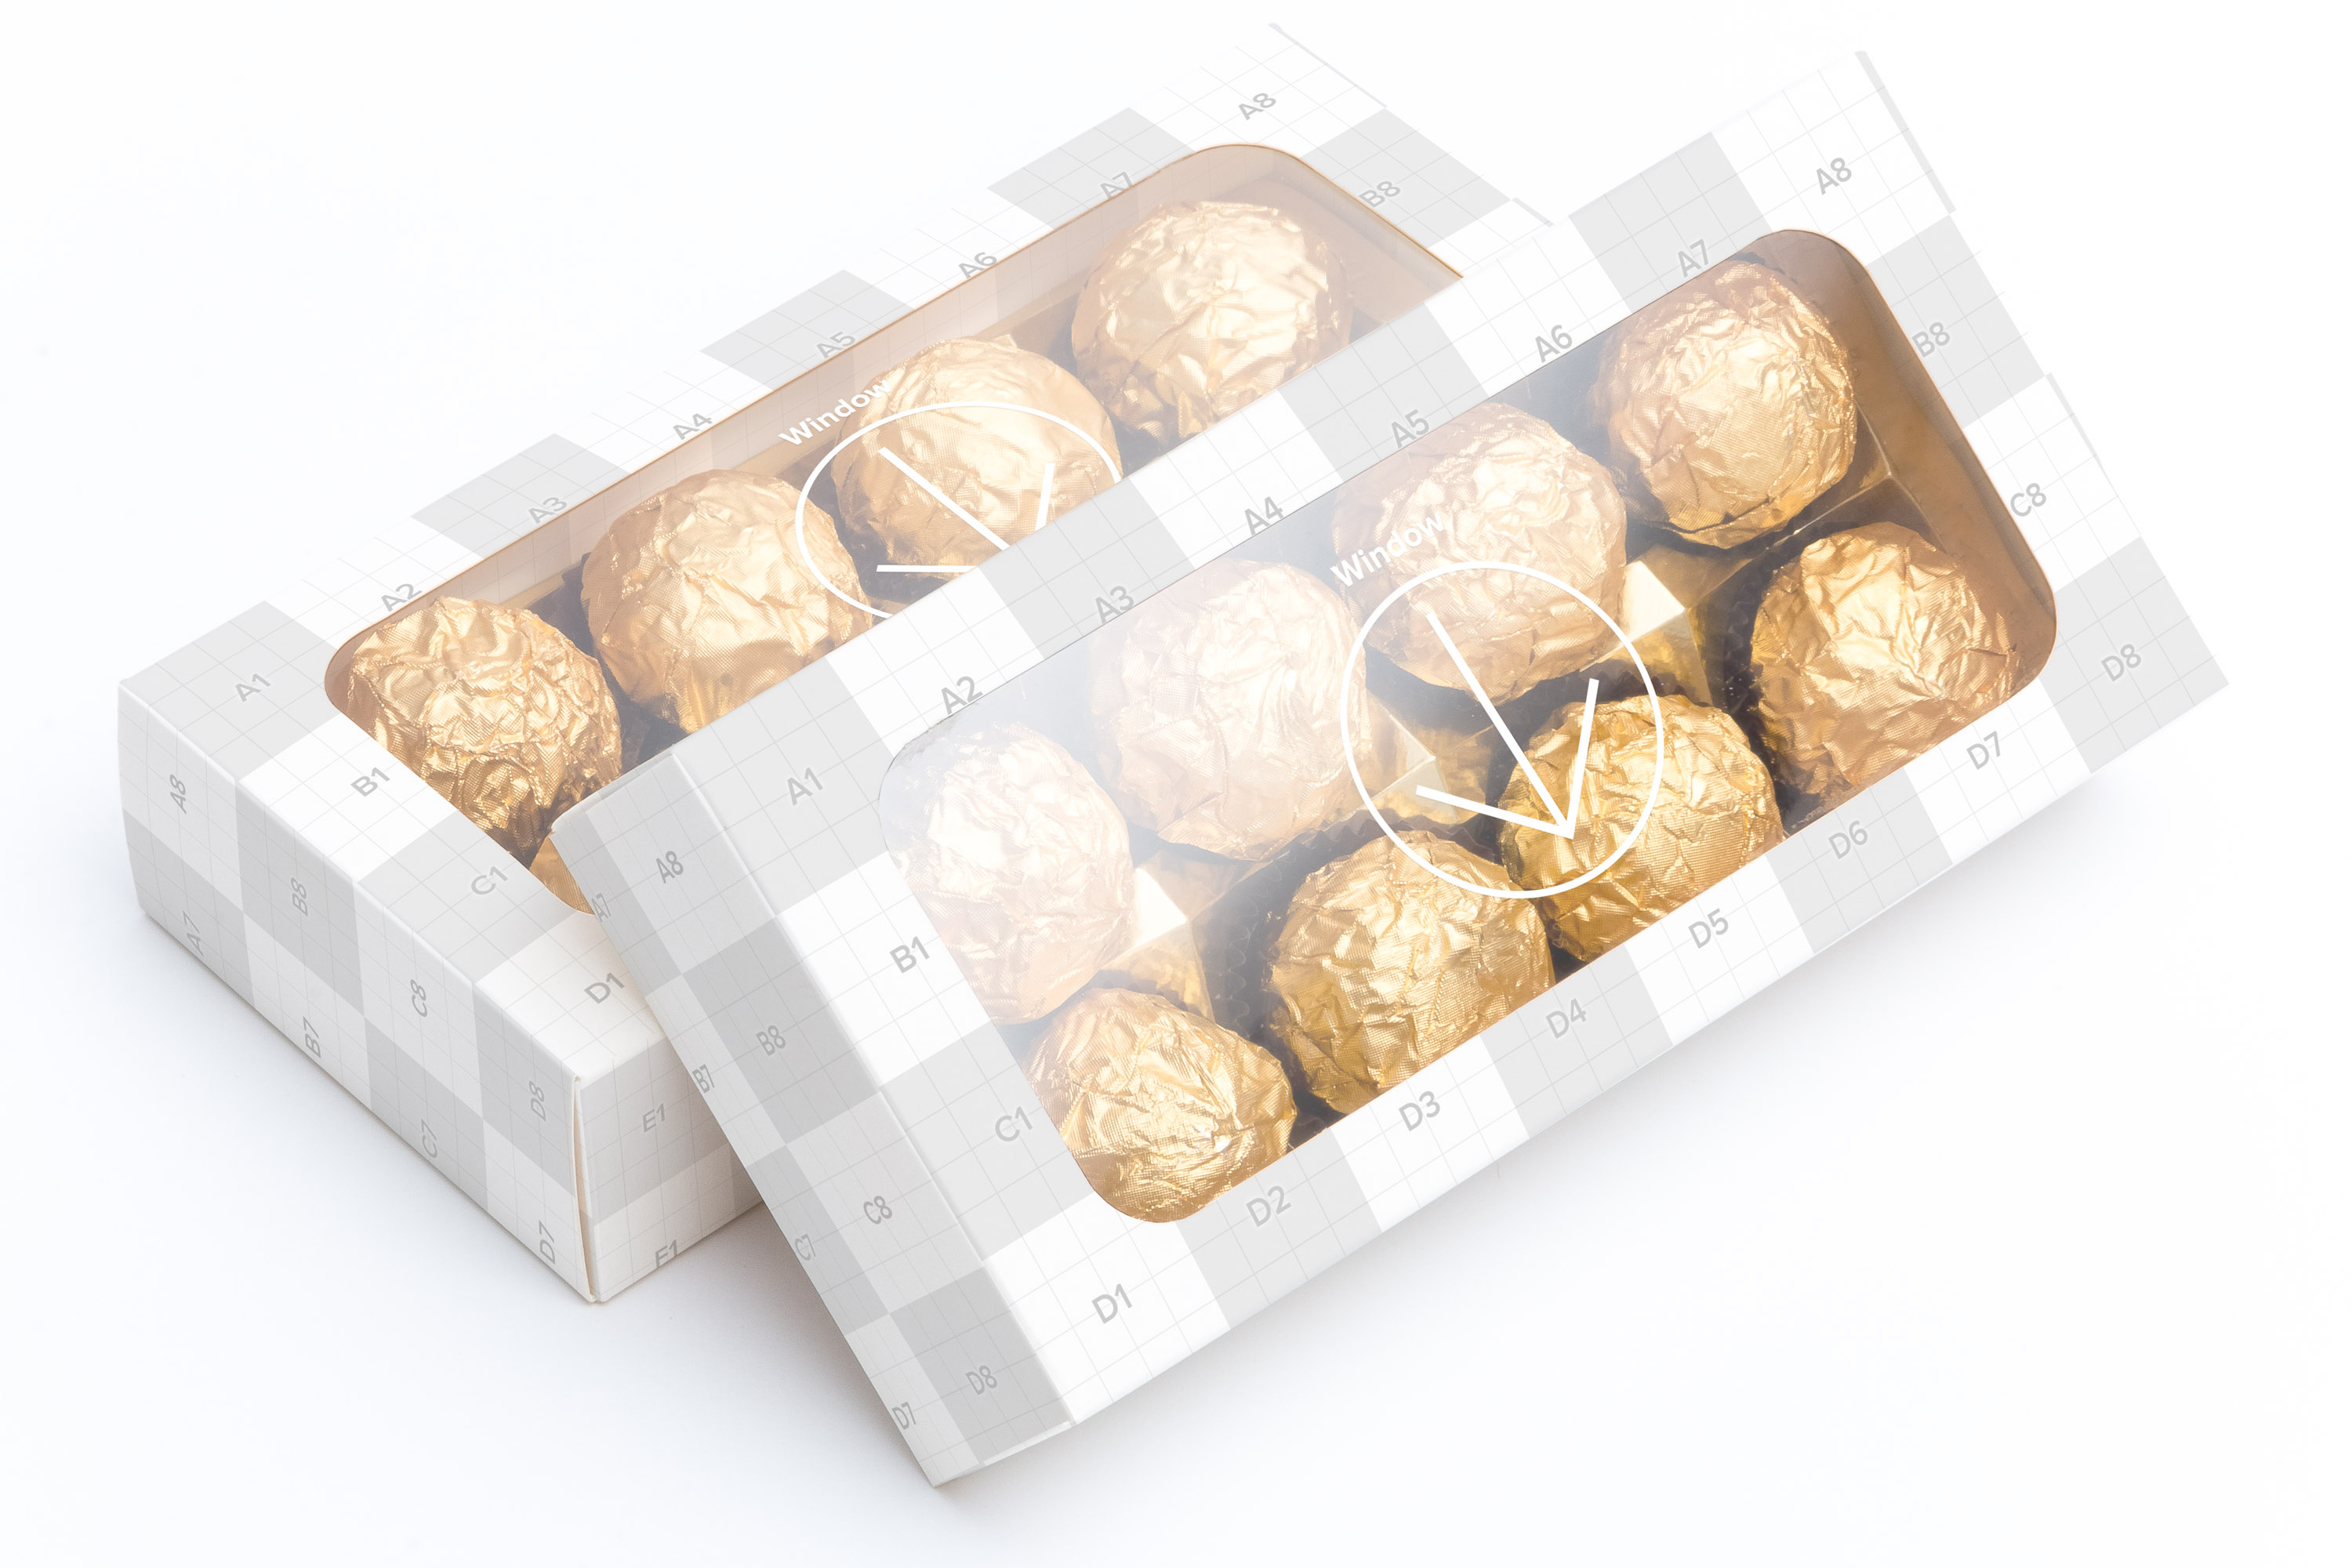 巧克力甜点包装盒外观设计样机07 Sweet Box Mockup 07插图2